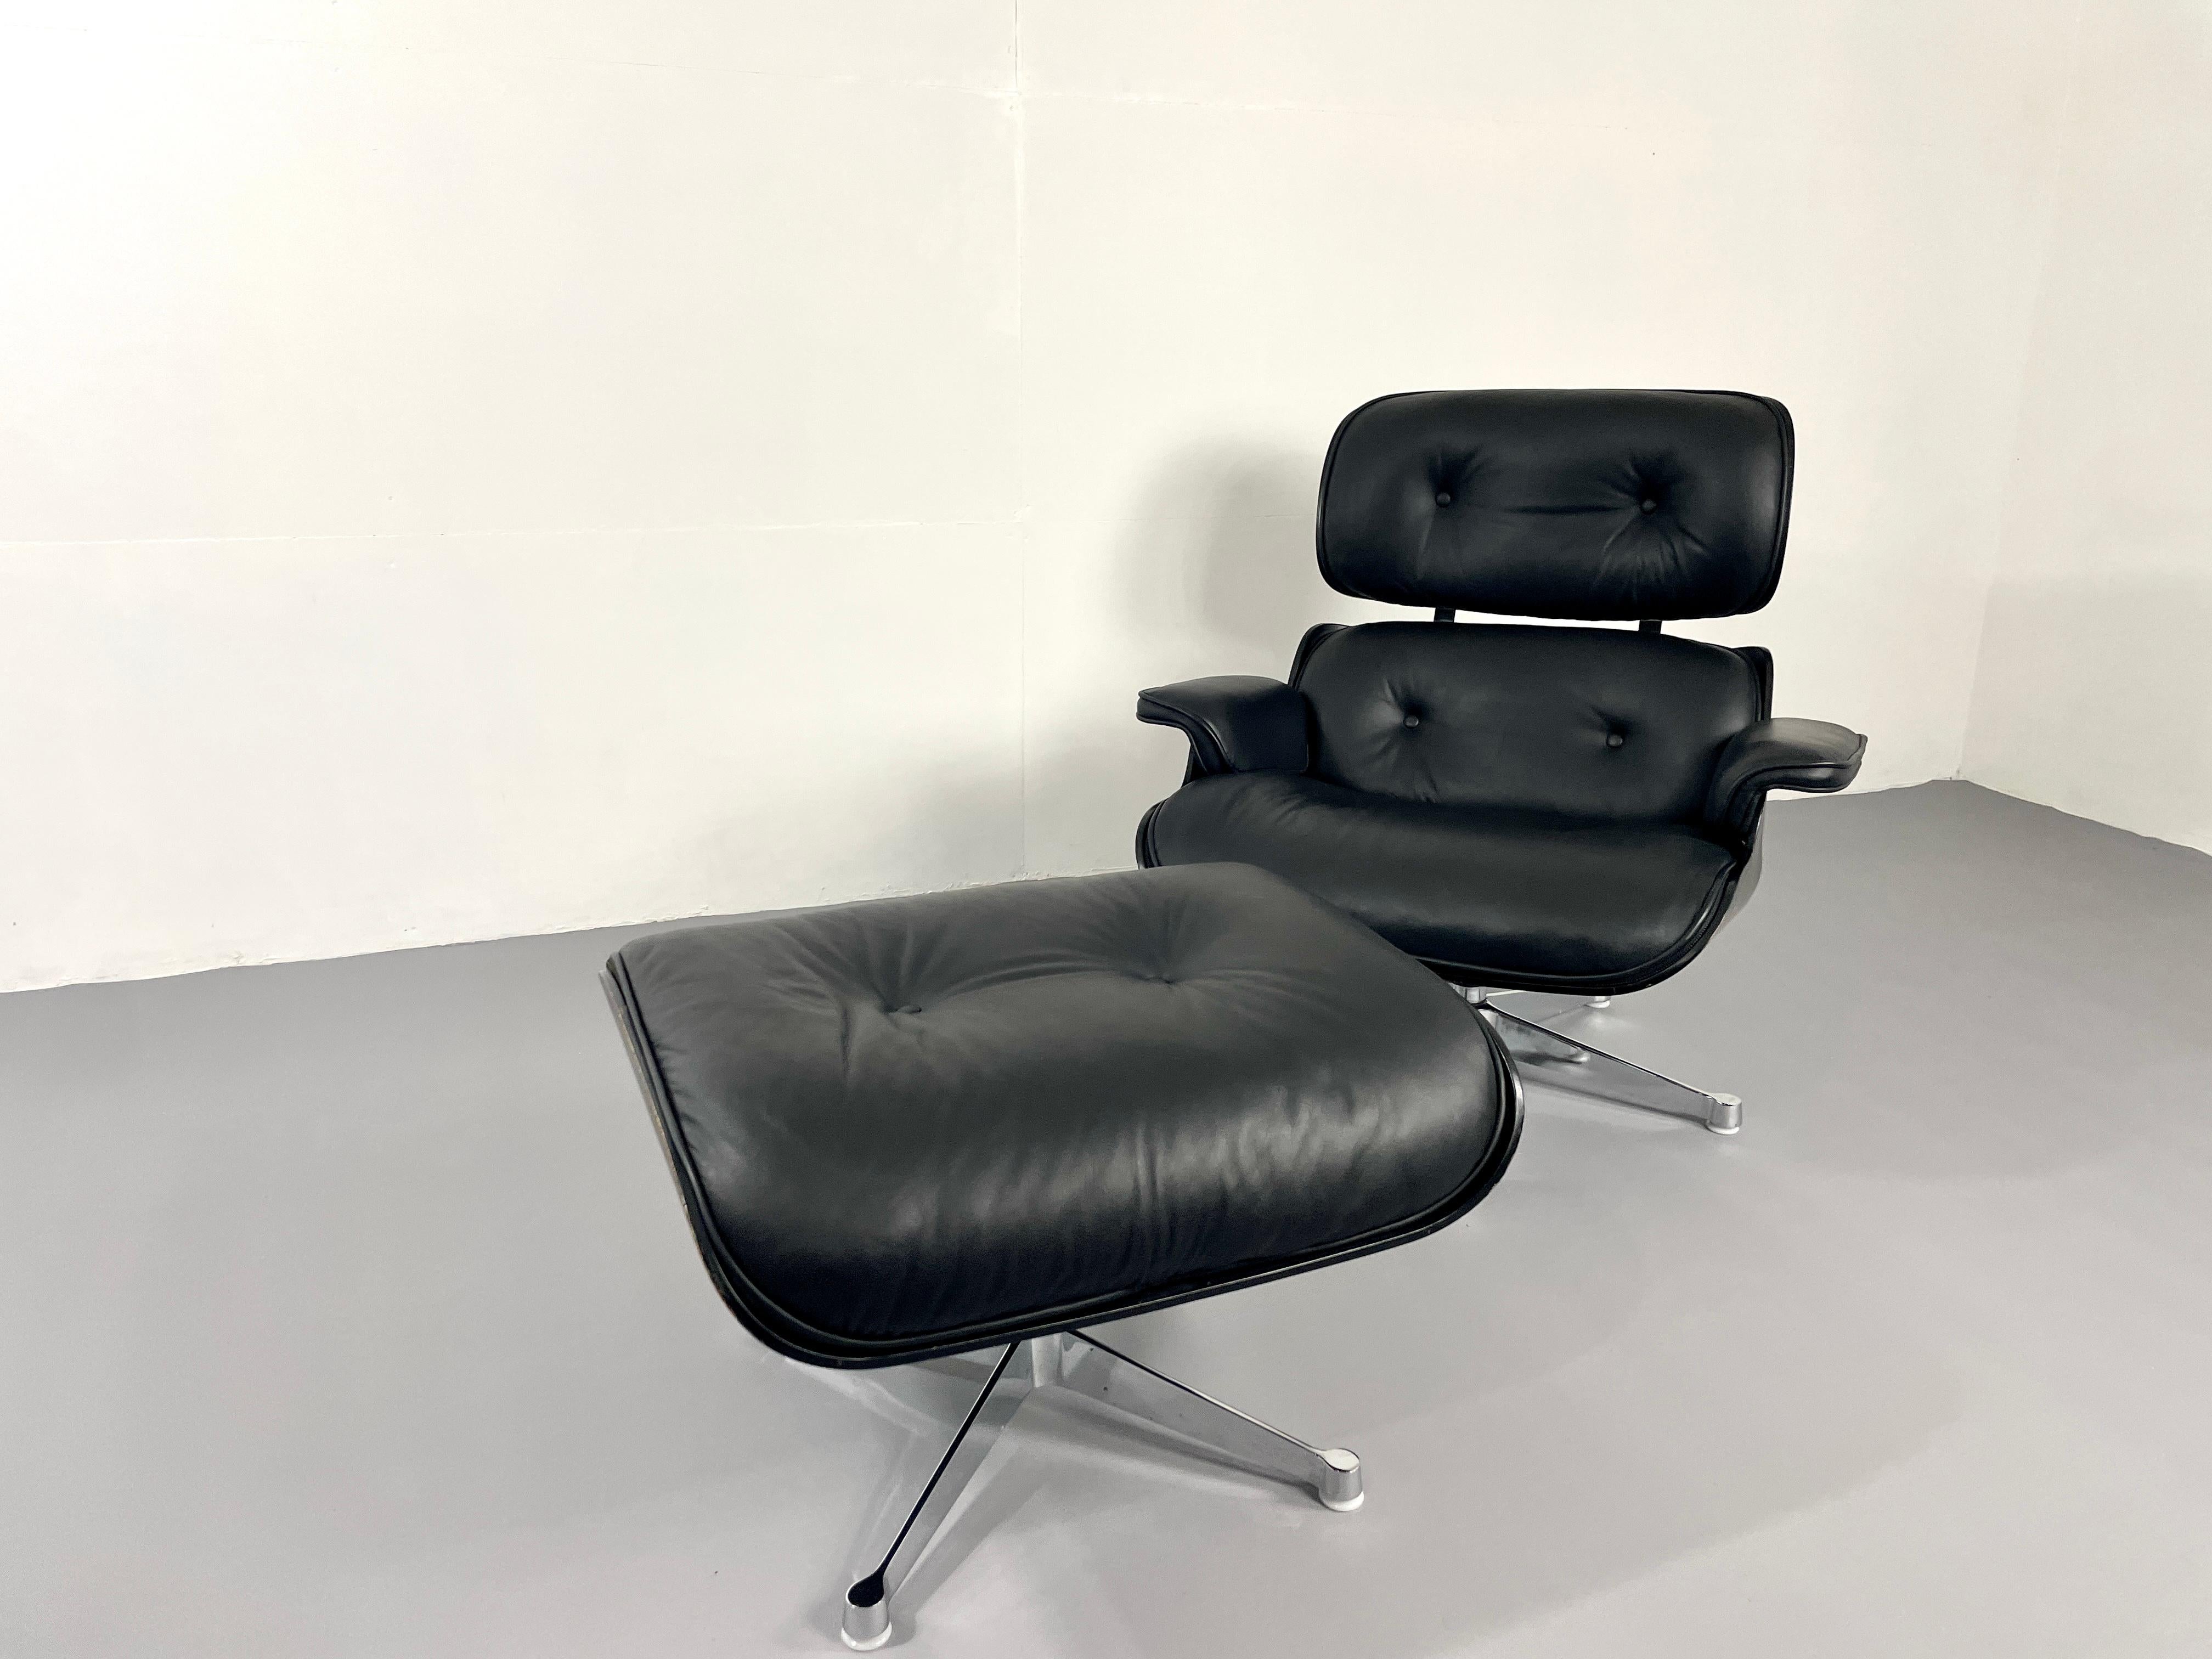 Chaise longue emblématique de Charles et Ray Eames. Cet icône n'a pas besoin de beaucoup de mots. Il s'agit probablement du fauteuil Mid Century le plus célèbre et le plus confortable. La chaise a été produite par Herman Miller. 
Dans la version